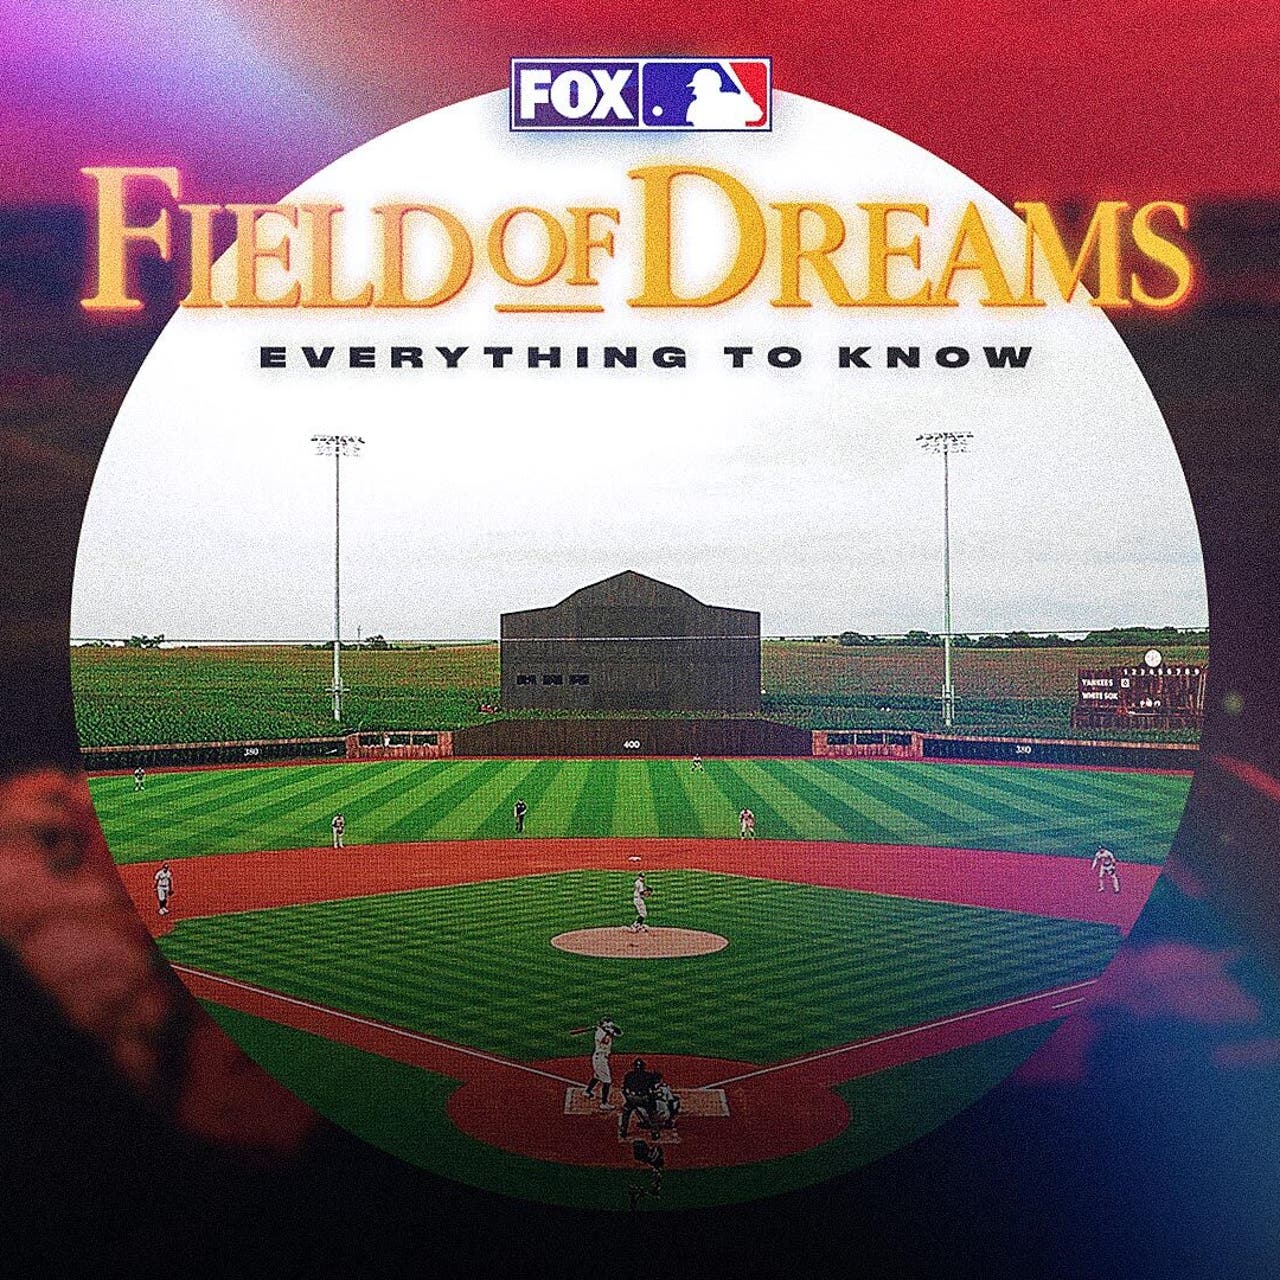 Blue Sox win Field of Dreams, 08/10/2022